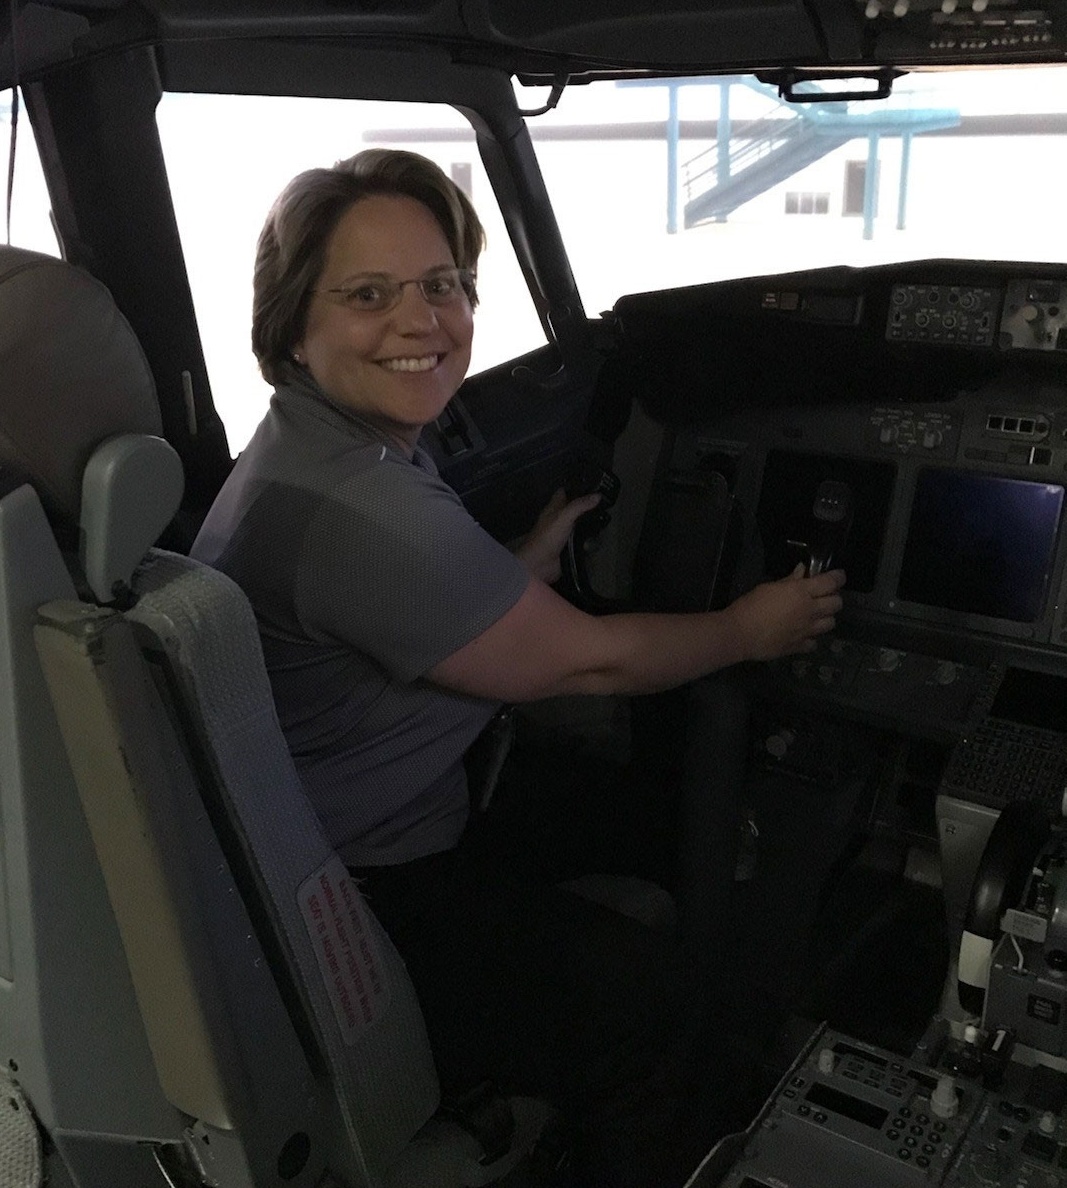 Zoom image: Joanne Rinaldo in a plane's cockpit.